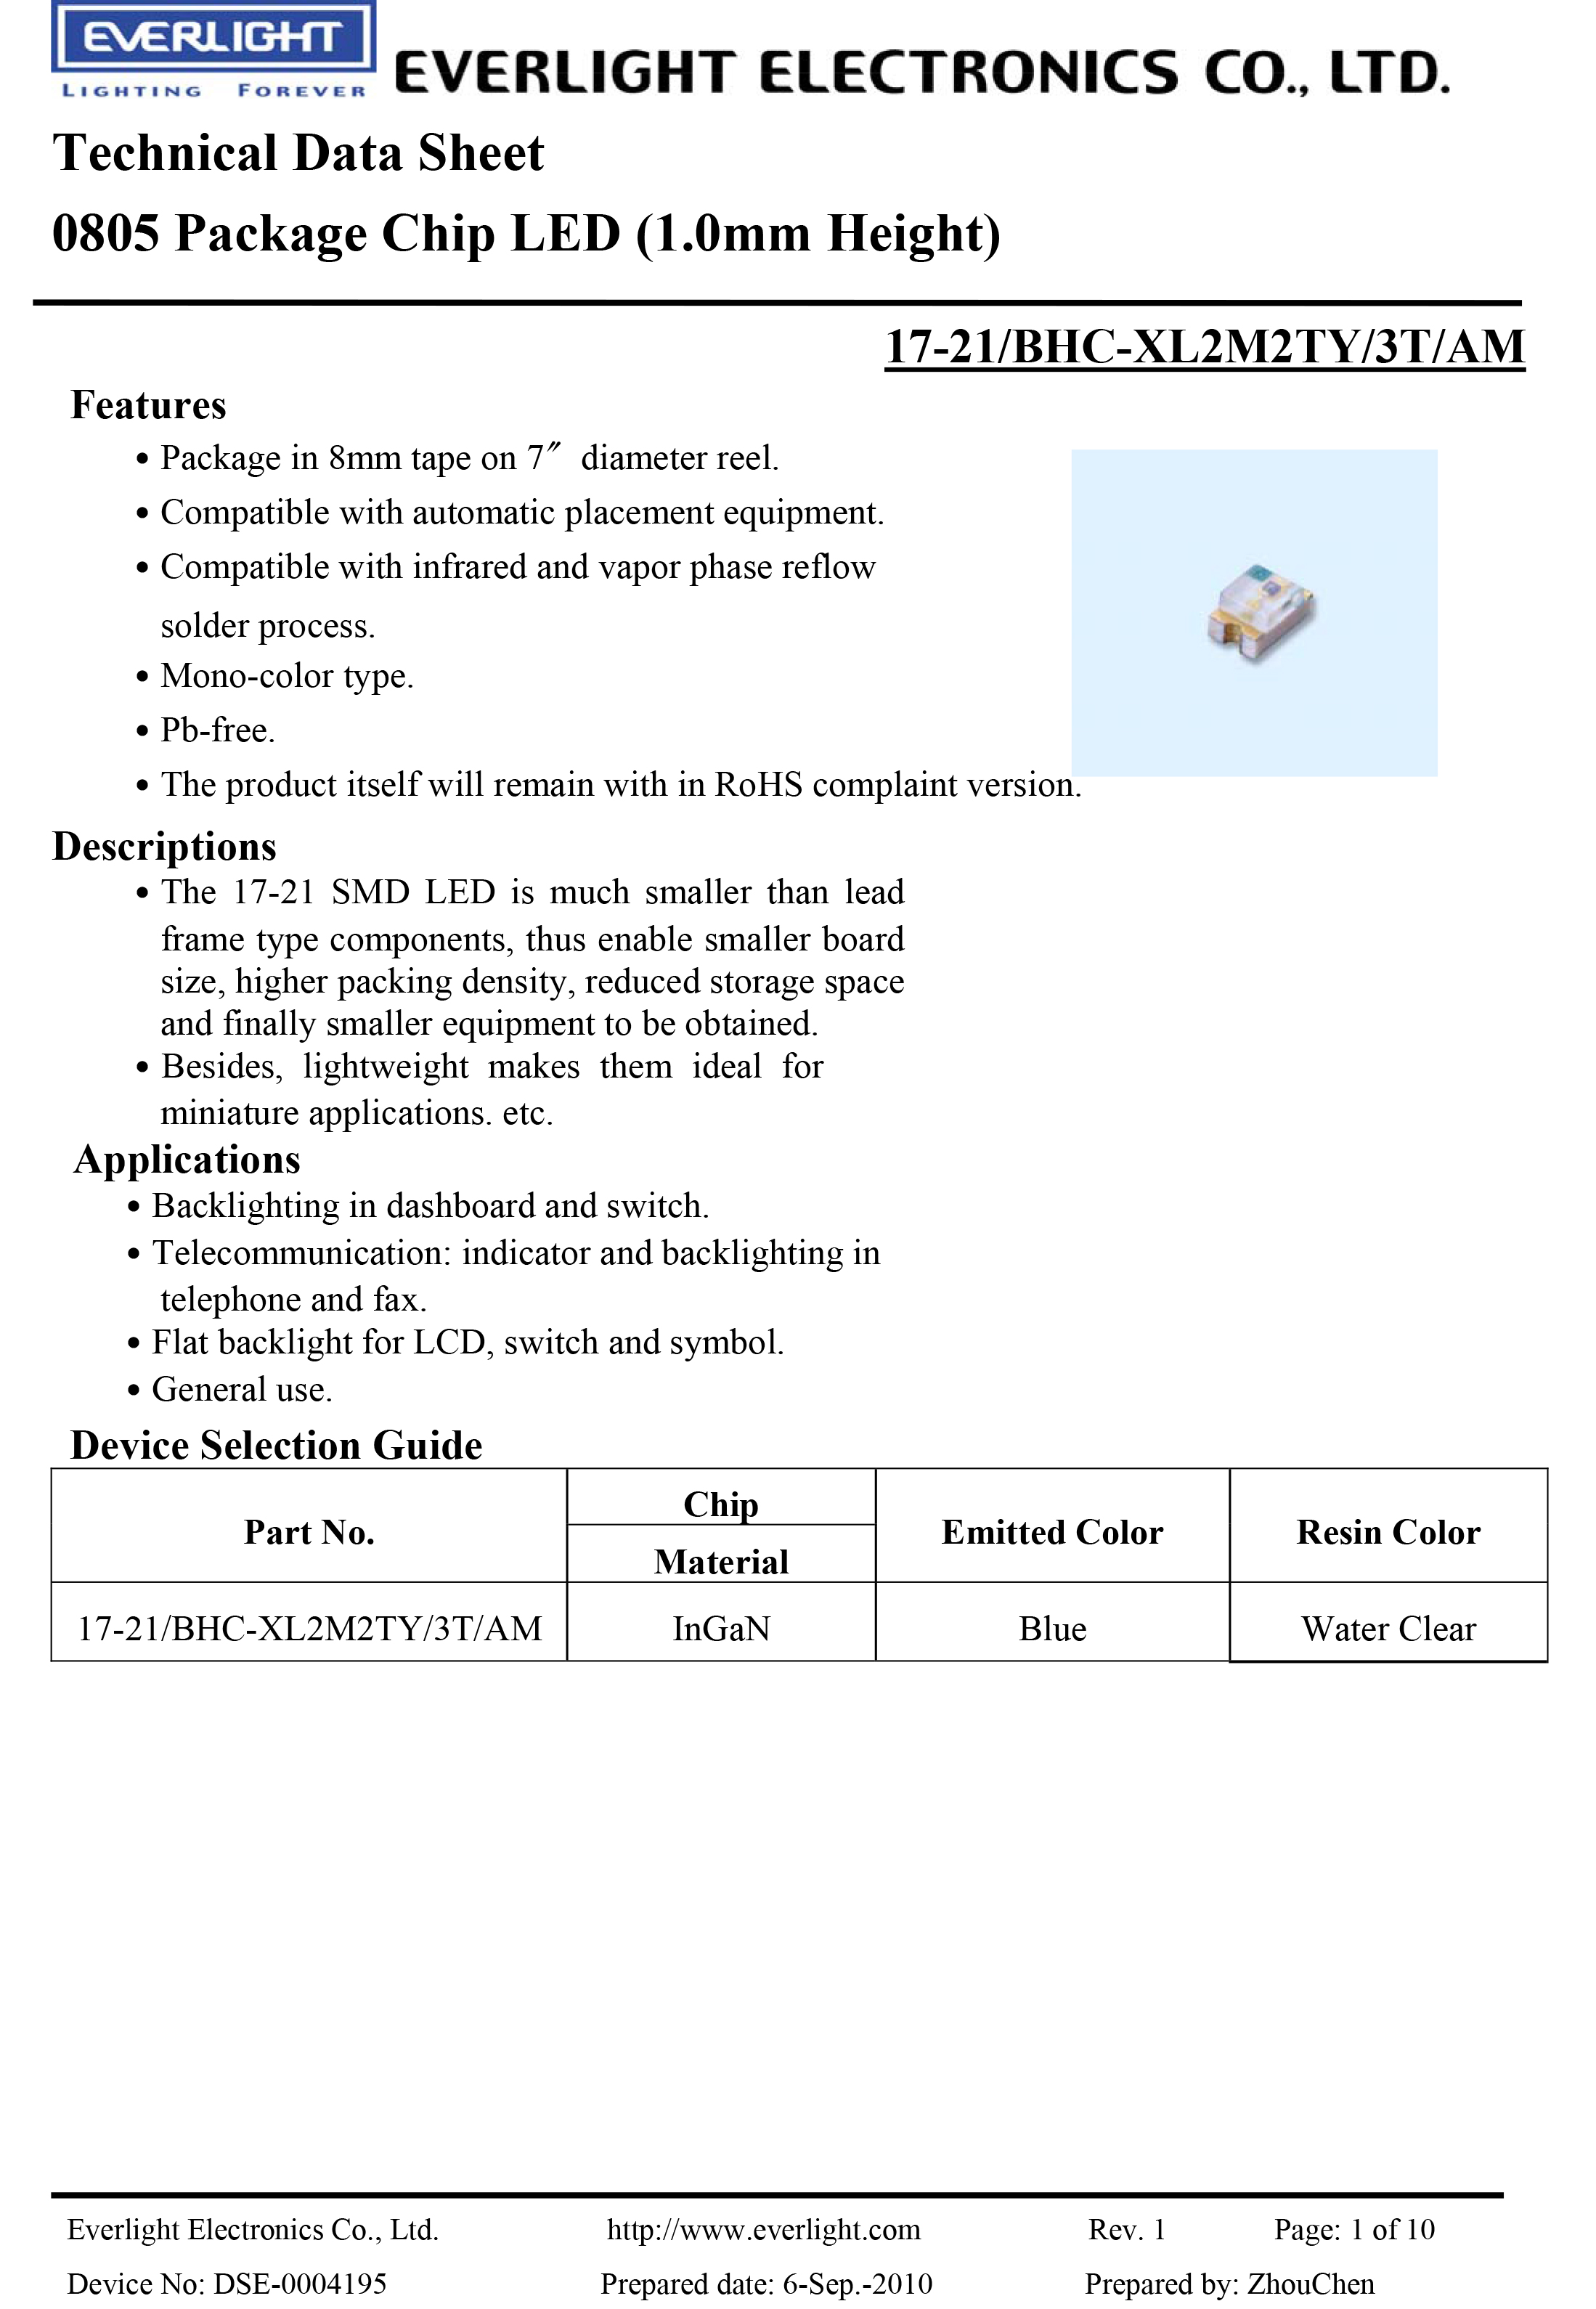 亿光贴片0805汽车专用灯17-21/BHC-XL2M2TY/3T-AM规格书PDF 数据表